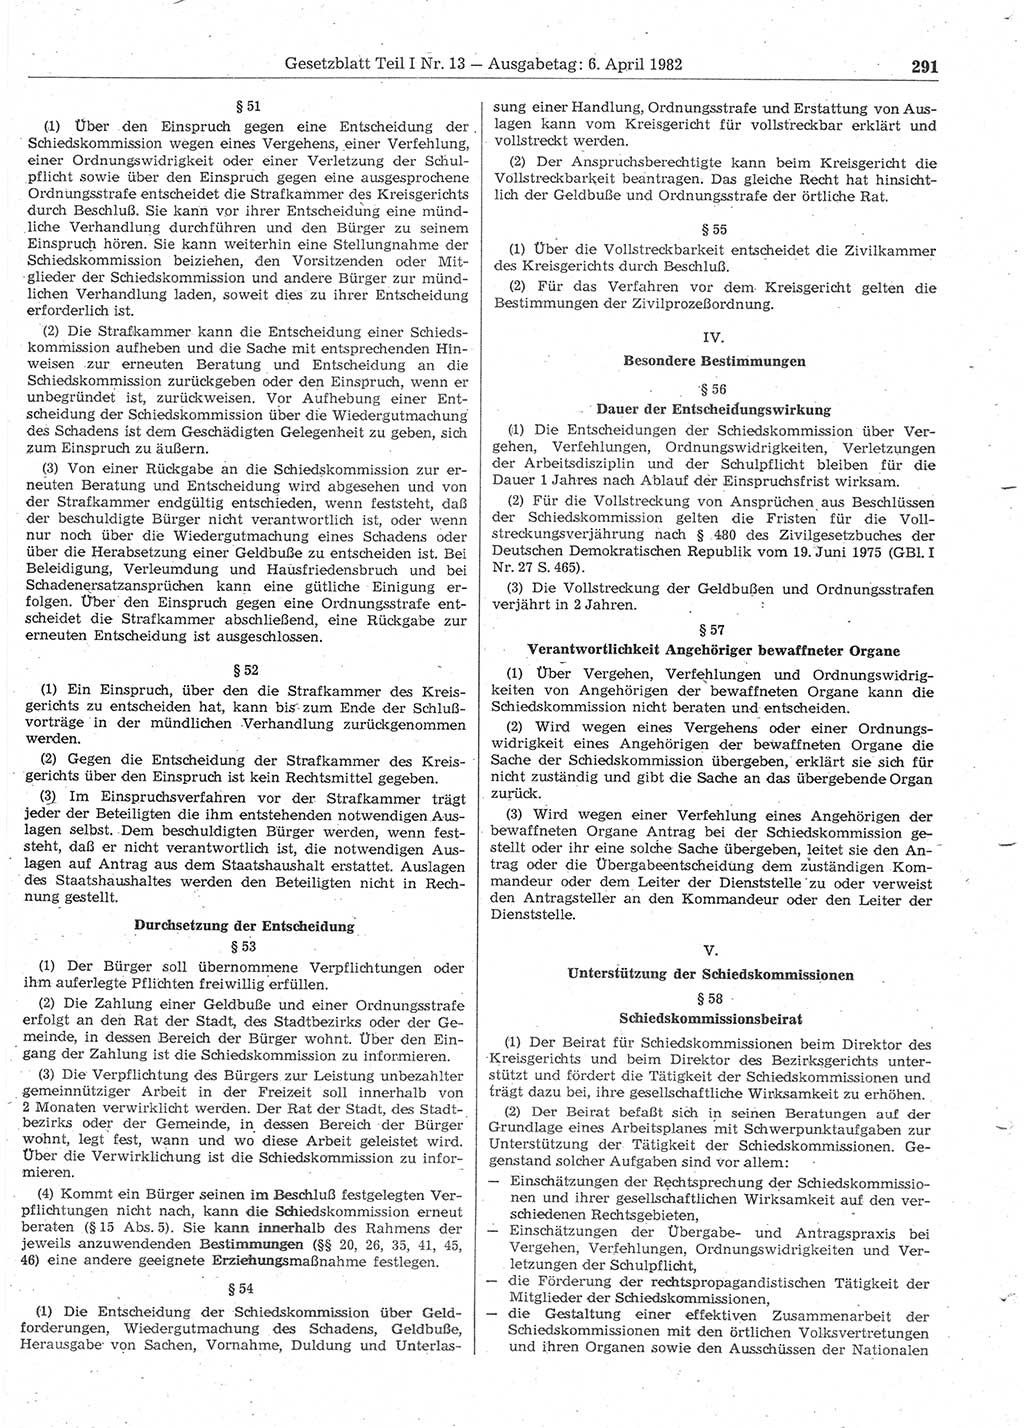 Gesetzblatt (GBl.) der Deutschen Demokratischen Republik (DDR) Teil Ⅰ 1982, Seite 291 (GBl. DDR Ⅰ 1982, S. 291)